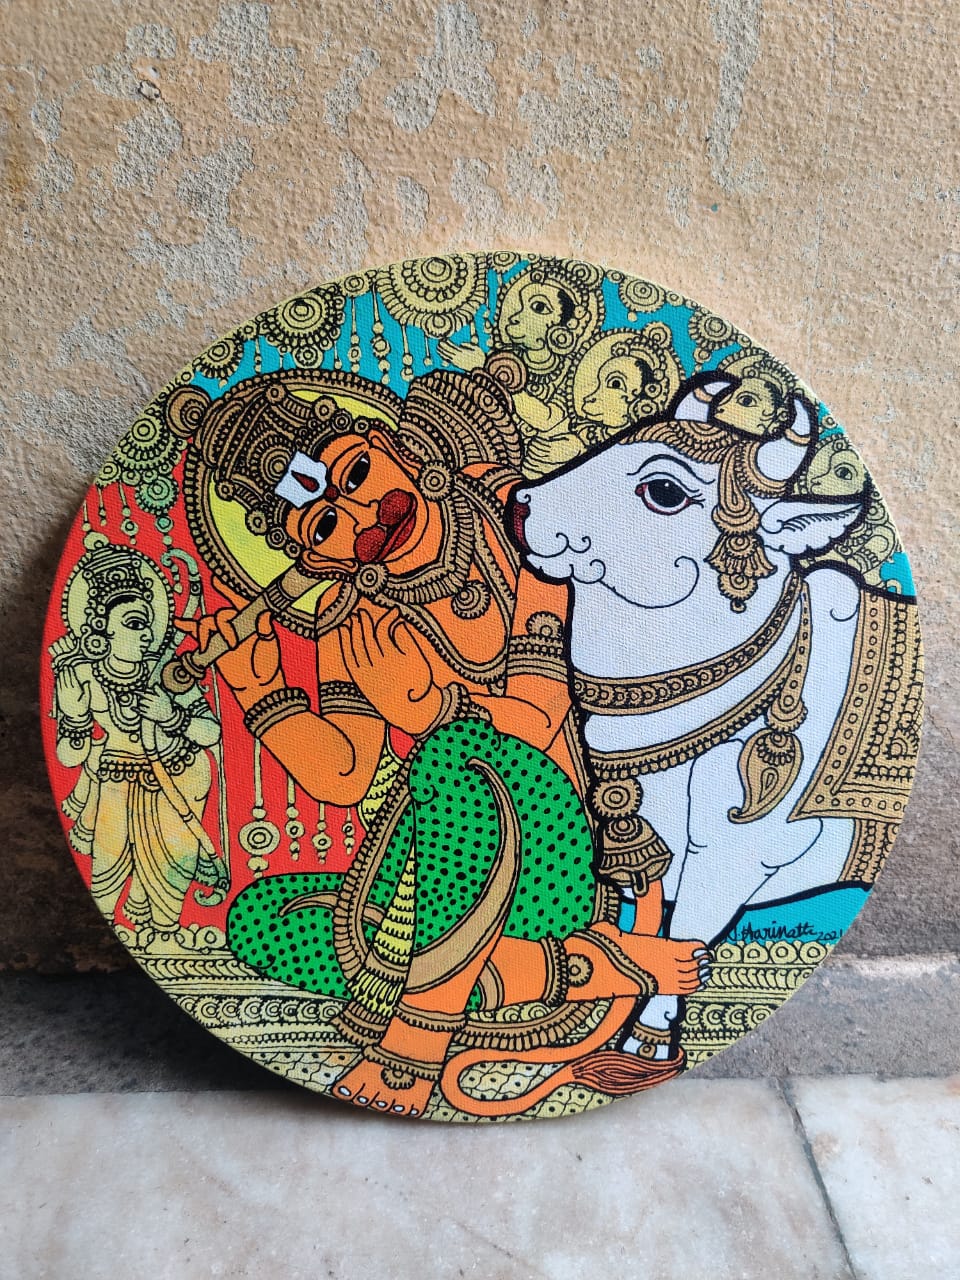 Hanuman Painting | Kalamkari Artwork by Harinath.N – MeMeraki.com